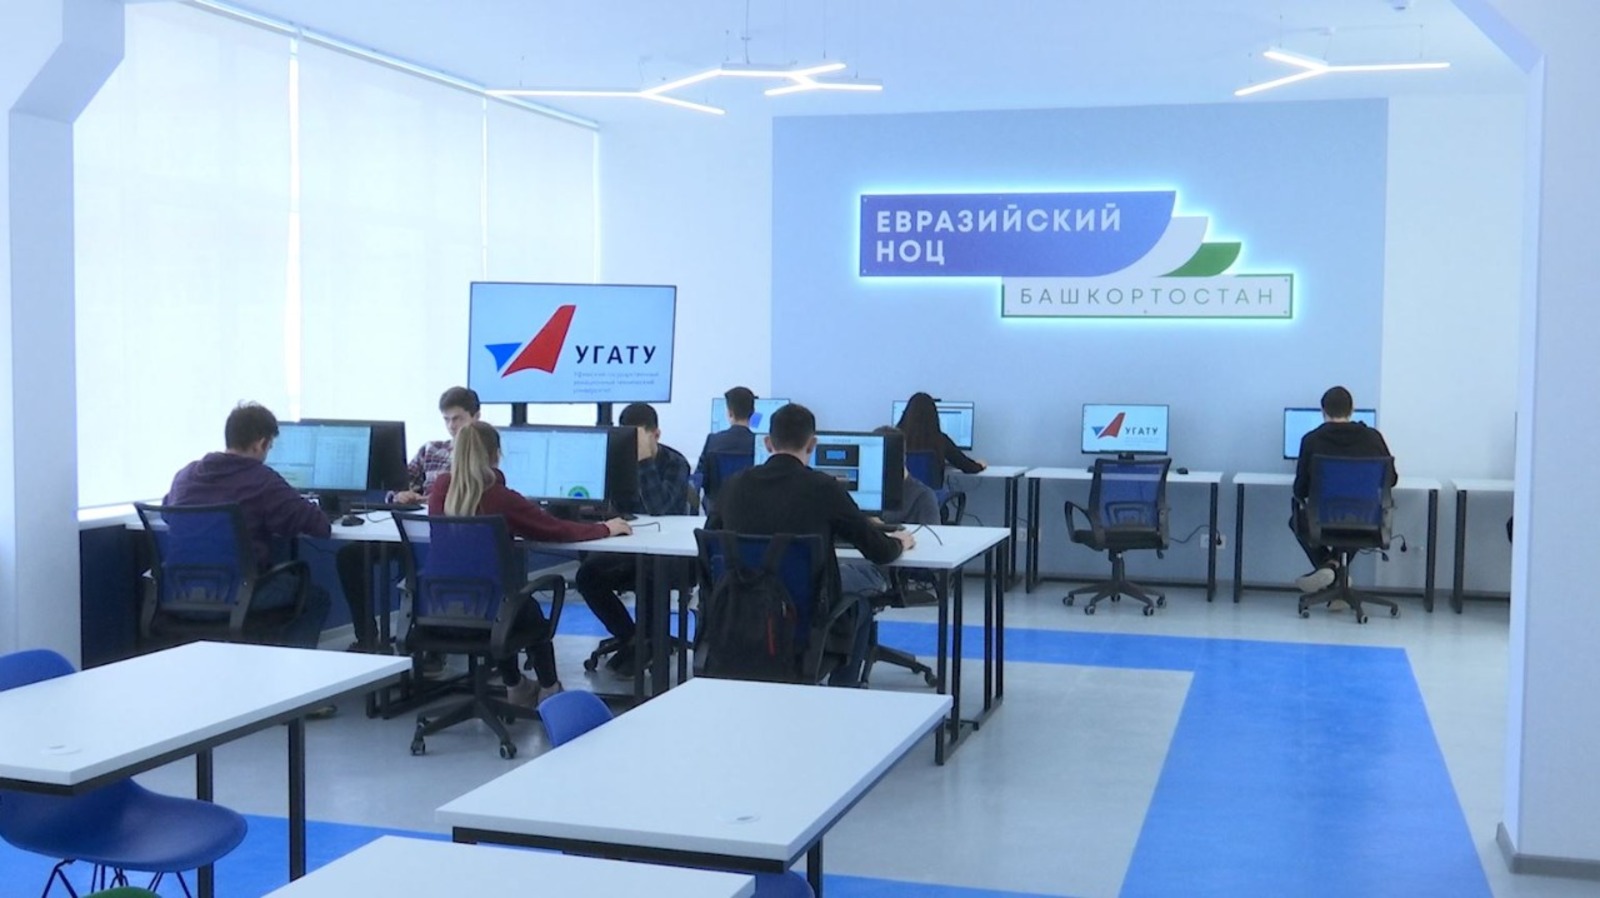 Состоялось открытие первой аудитории Центра развития компетенций Евразийского НОЦ мирового уровня на площадке УГАТУ